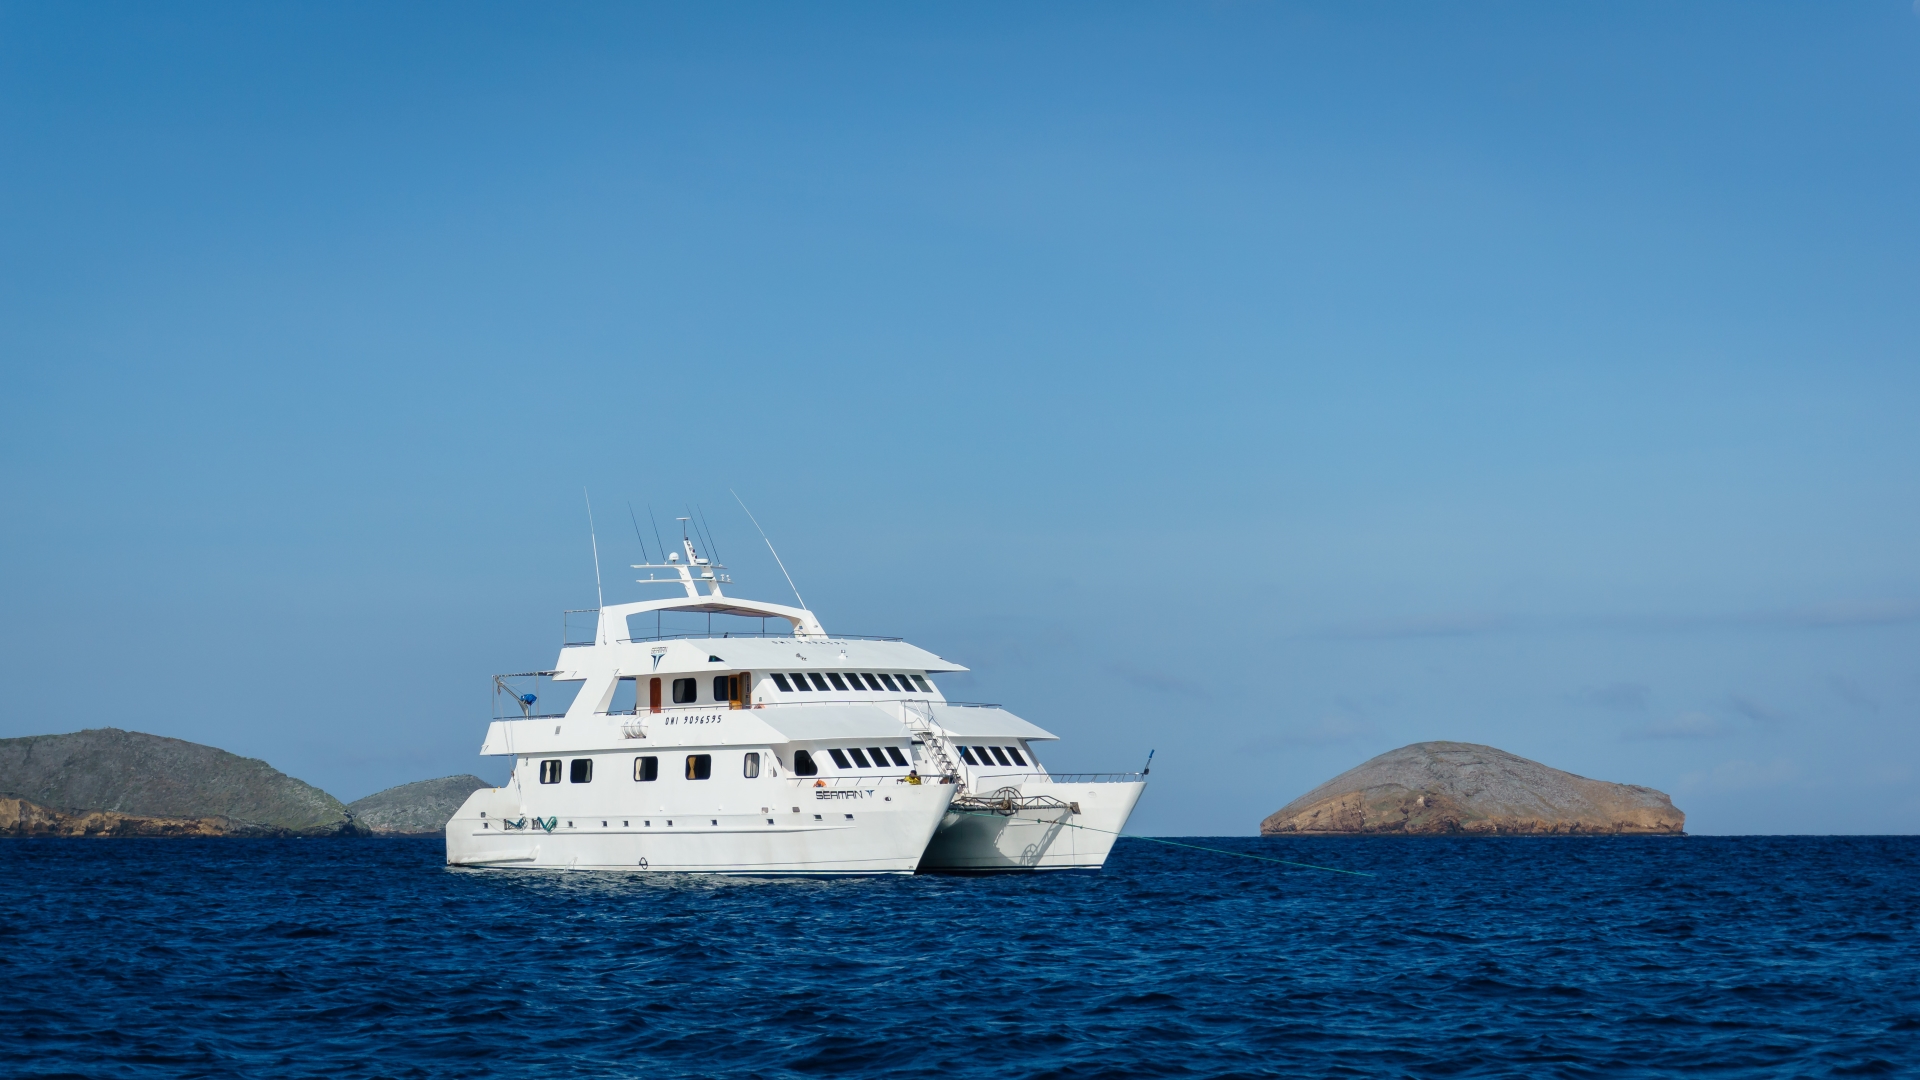 The catamaran  - Galapagos Seaman Journey